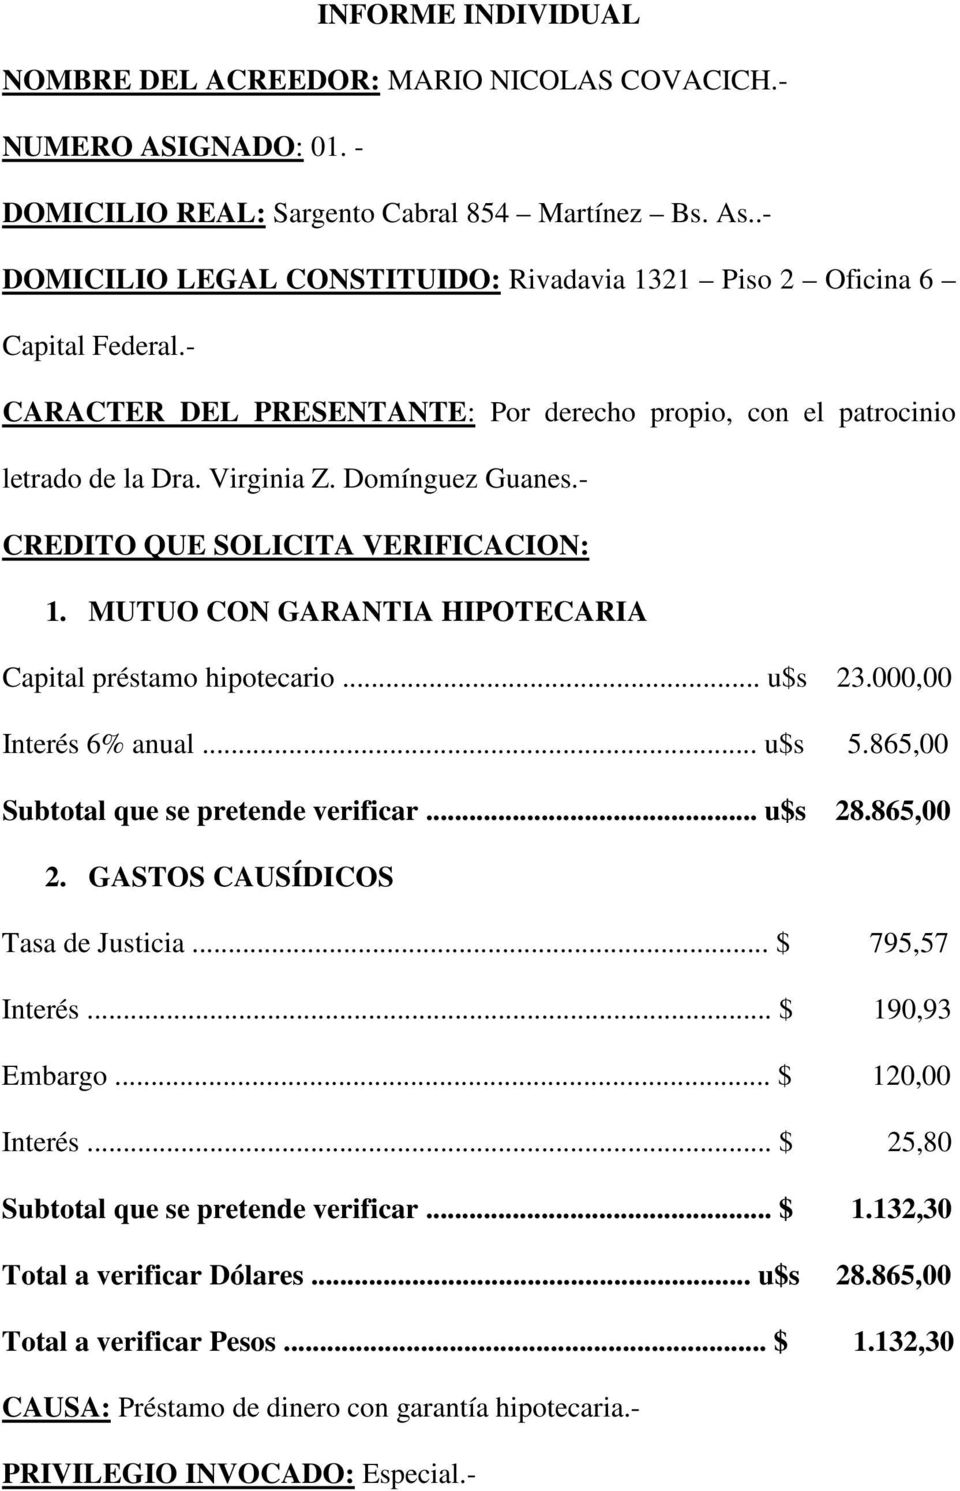 - CREDITO QUE SOLICITA VERIFICACION: 1. MUTUO CON GARANTIA HIPOTECARIA Capital préstamo hipotecario... u$s 23.000,00 Interés 6% anual... u$s 5.865,00 Subtotal que se pretende verificar... u$s 28.